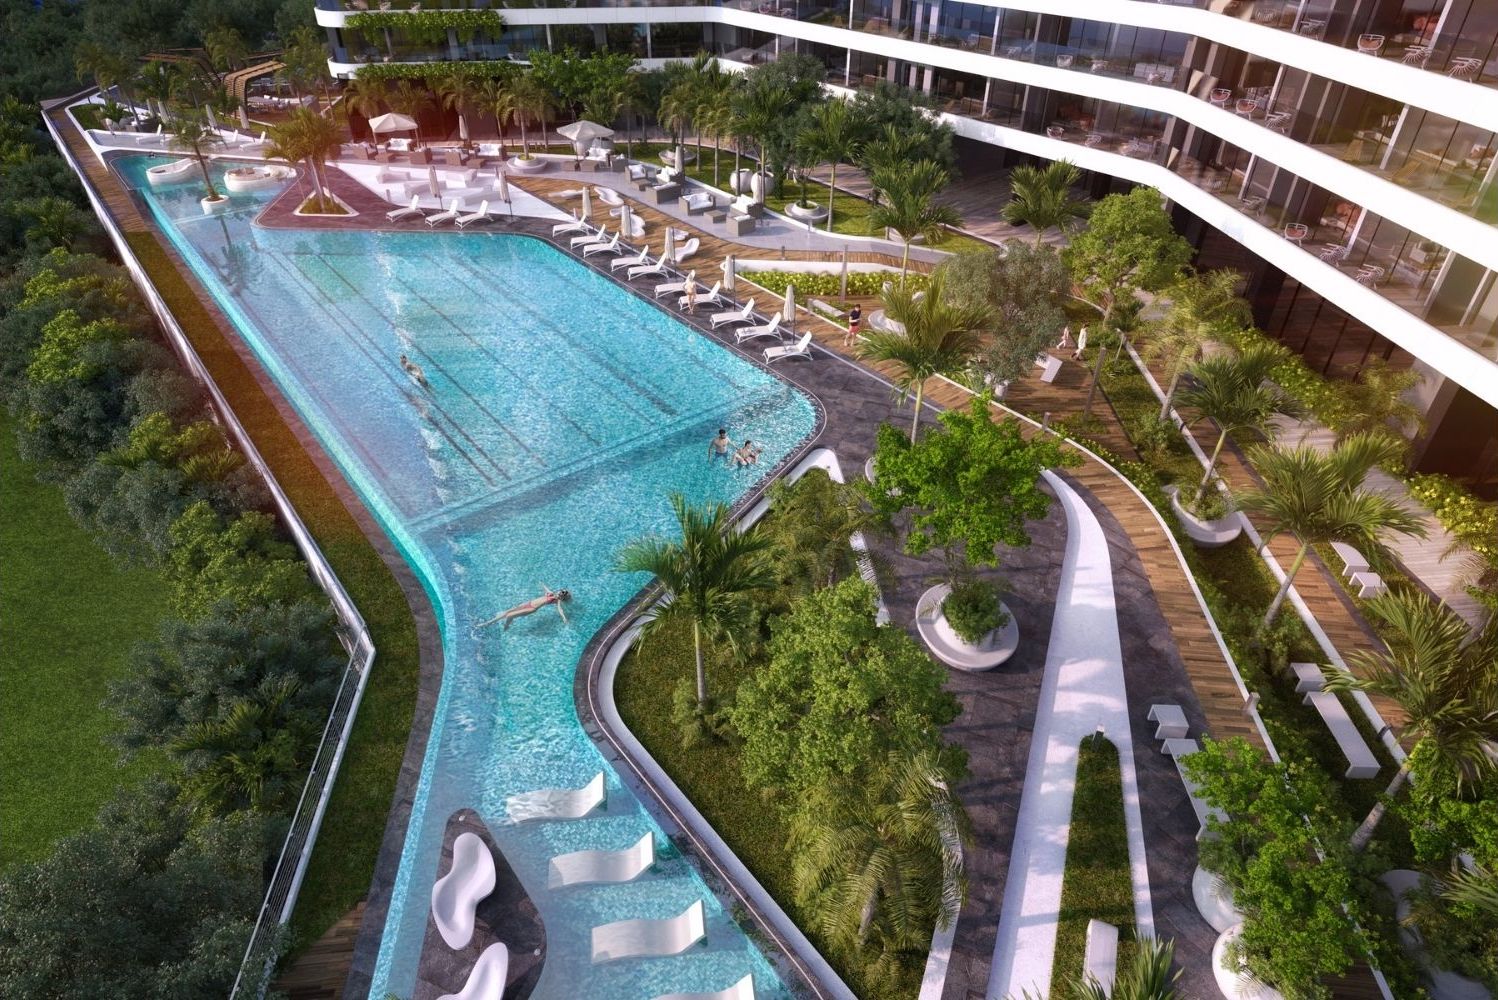 Condominium Ocean view, pool, beach club, pre-sale, Cancún